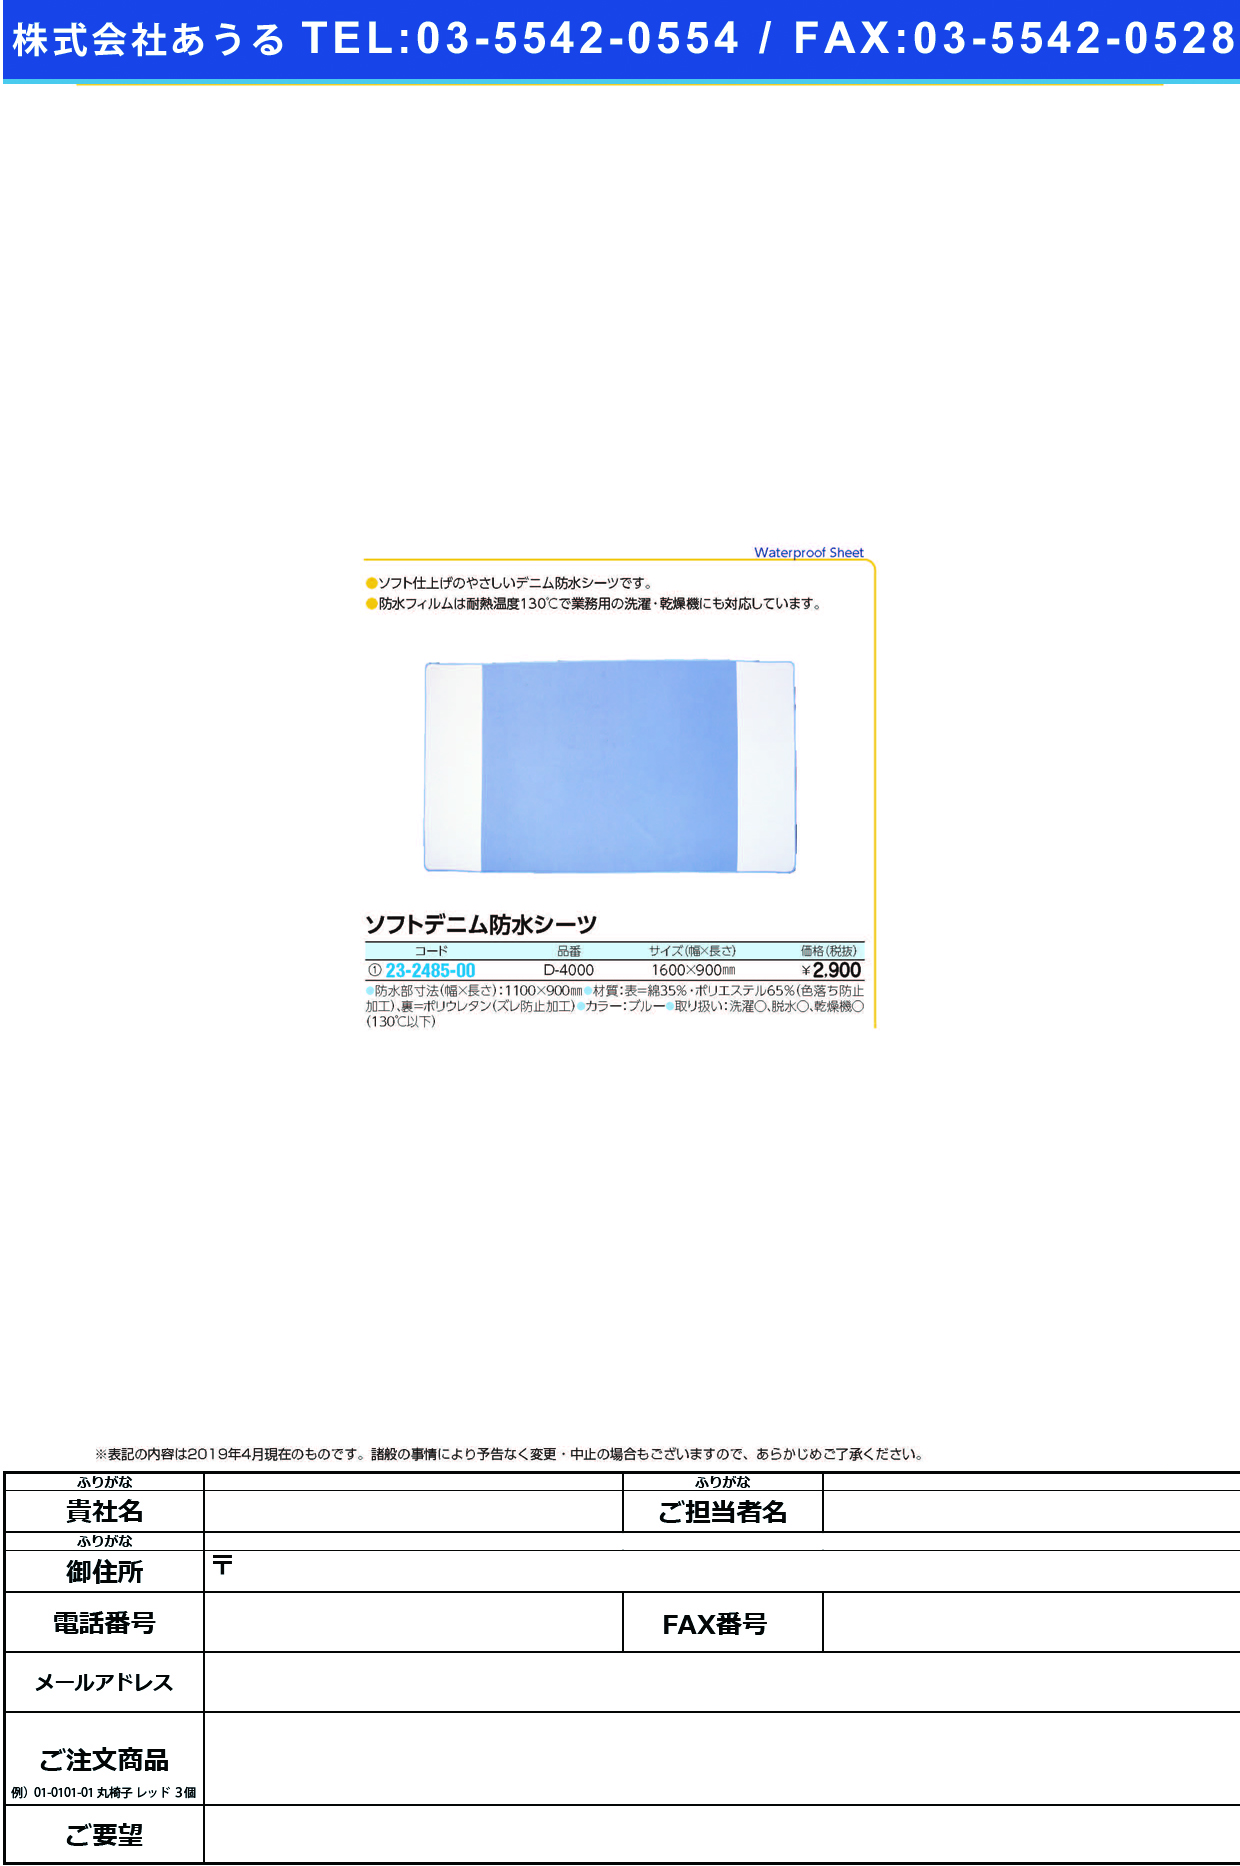 (23-2485-00)ソフトデニム防水シーツ D-4000(W1600XL900MM) ｿﾌﾄﾃﾞﾆﾑﾎﾞｳｽｲｼｰﾂ【1枚単位】【2019年カタログ商品】